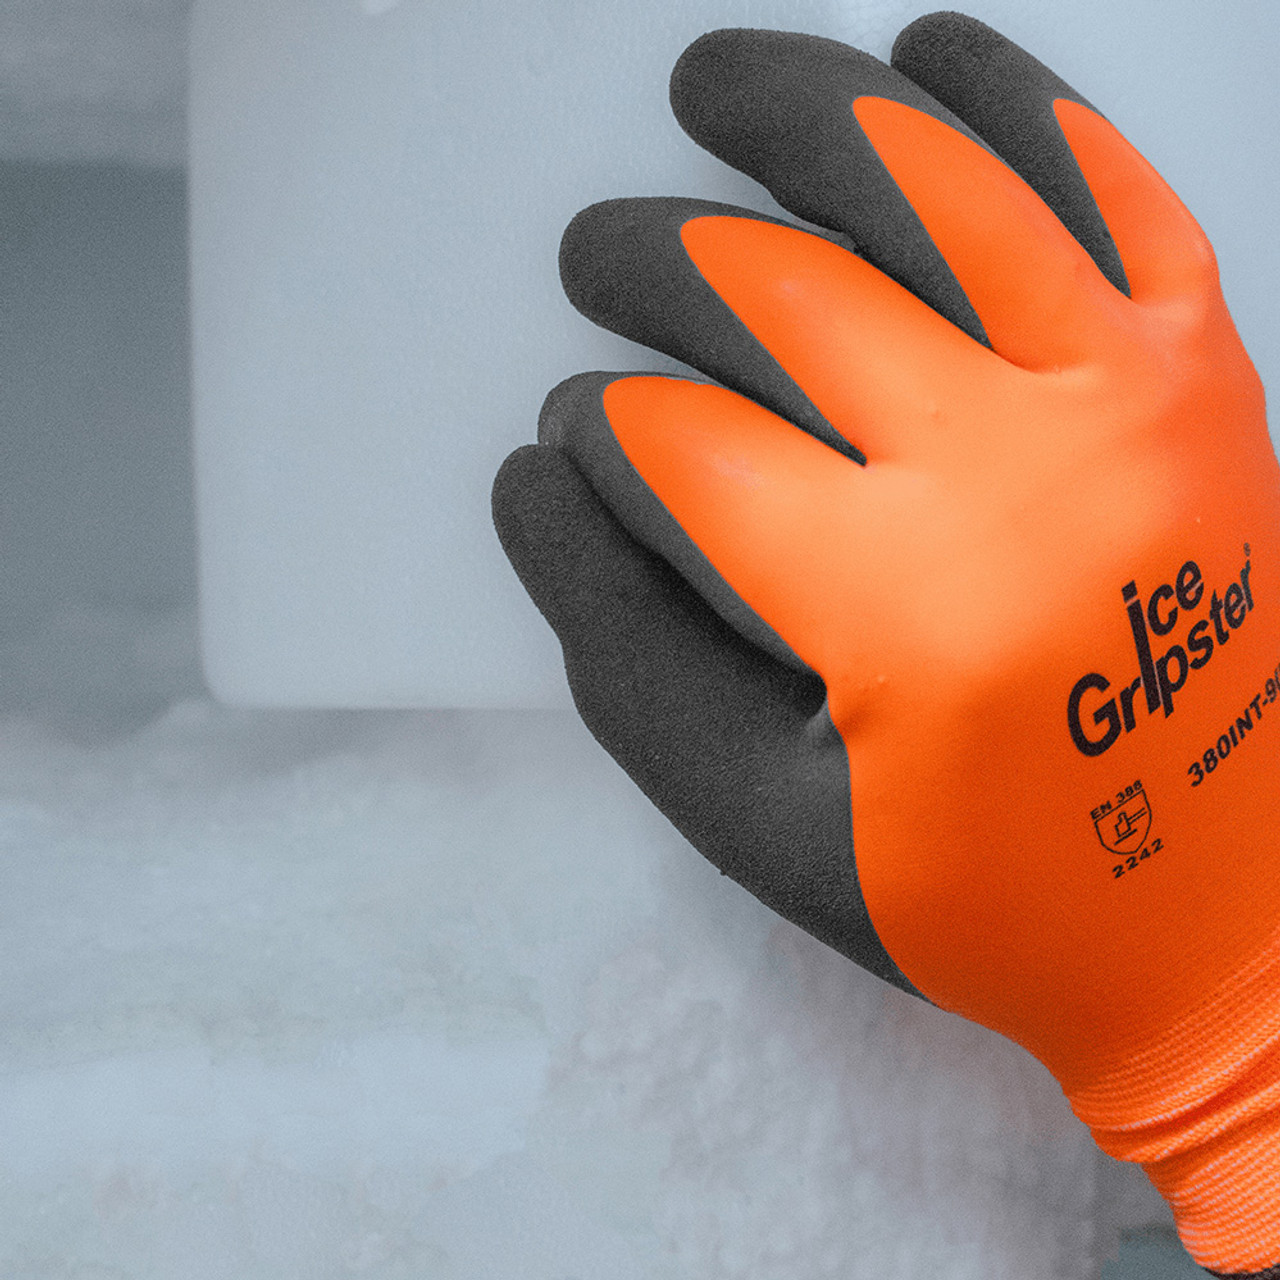 Global Glove PUG-511 PUG High-Visibility PU Coated Cut Resistant